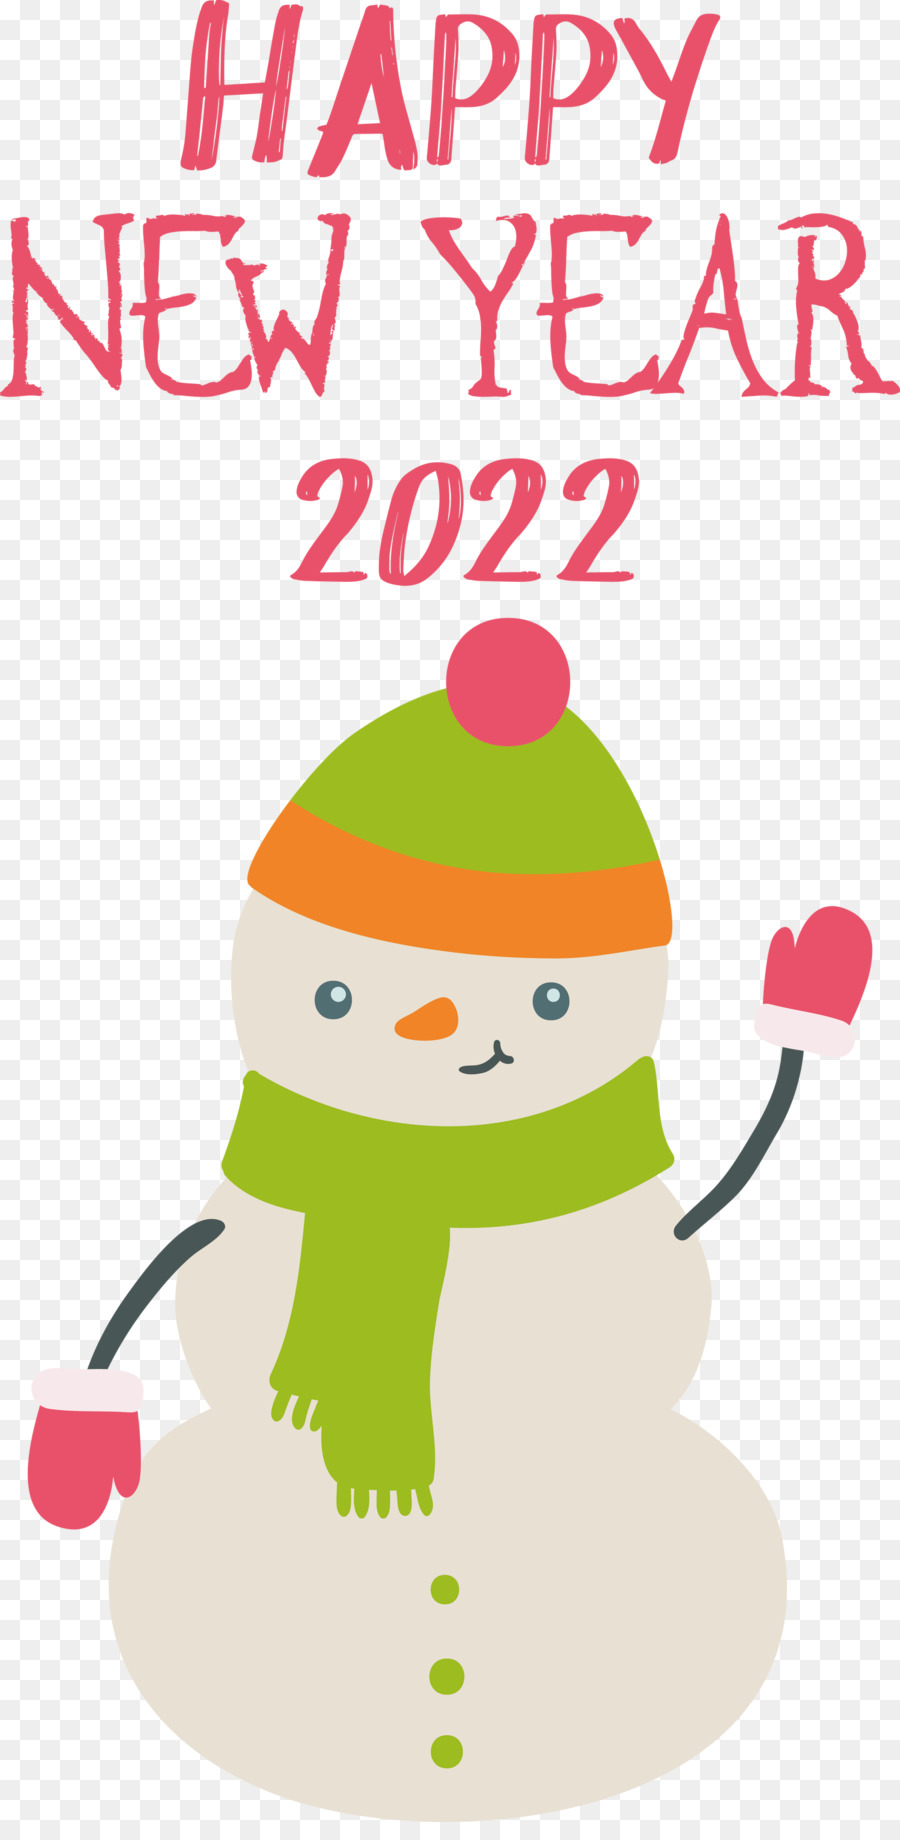 2022 Năm mới Chúc mừng năm mới 2022 - 